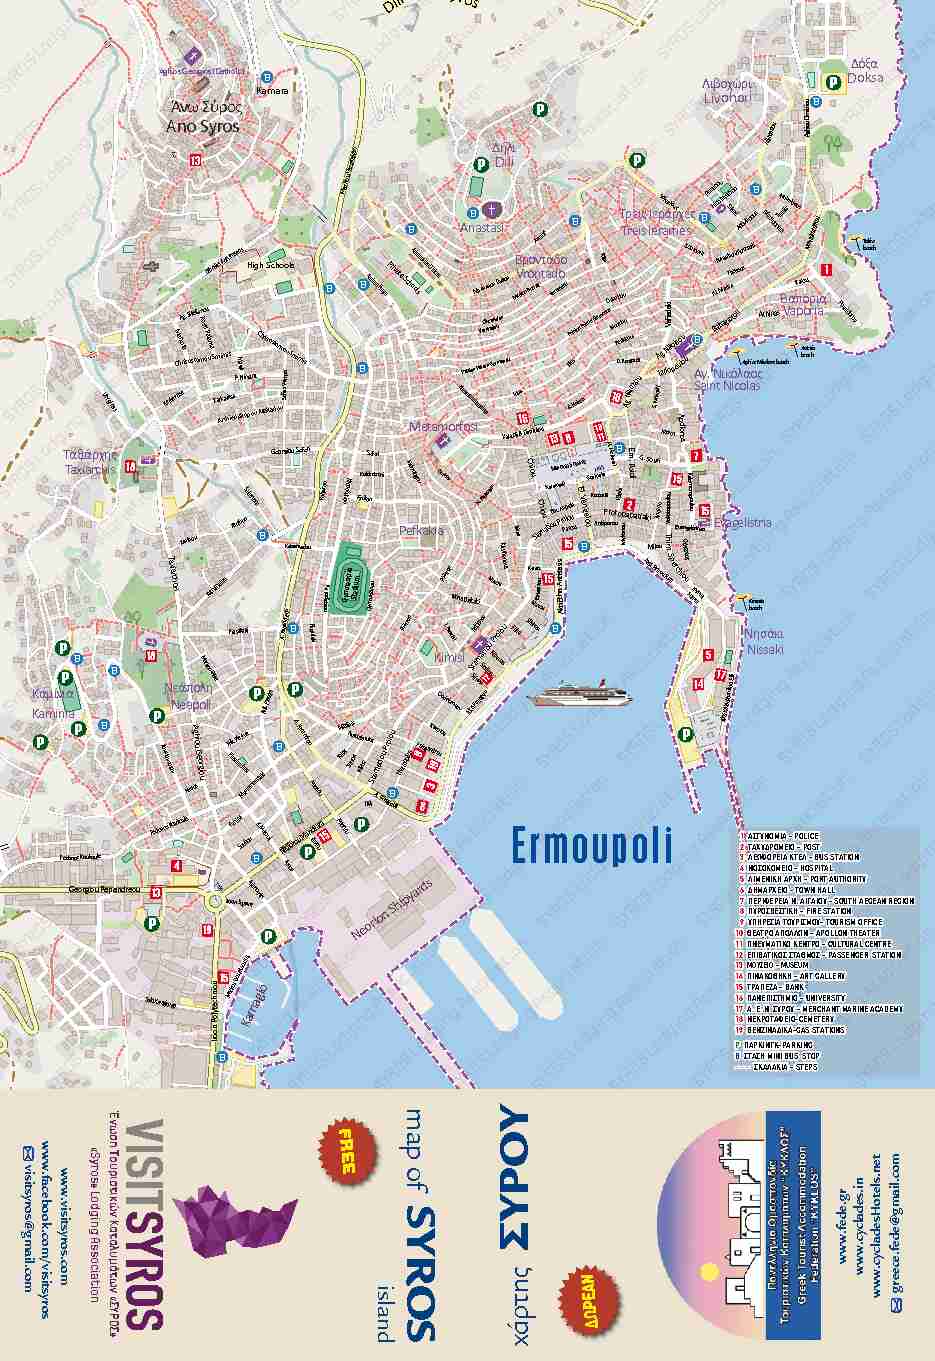 [PDF] Ermoupoli - Visit Syros